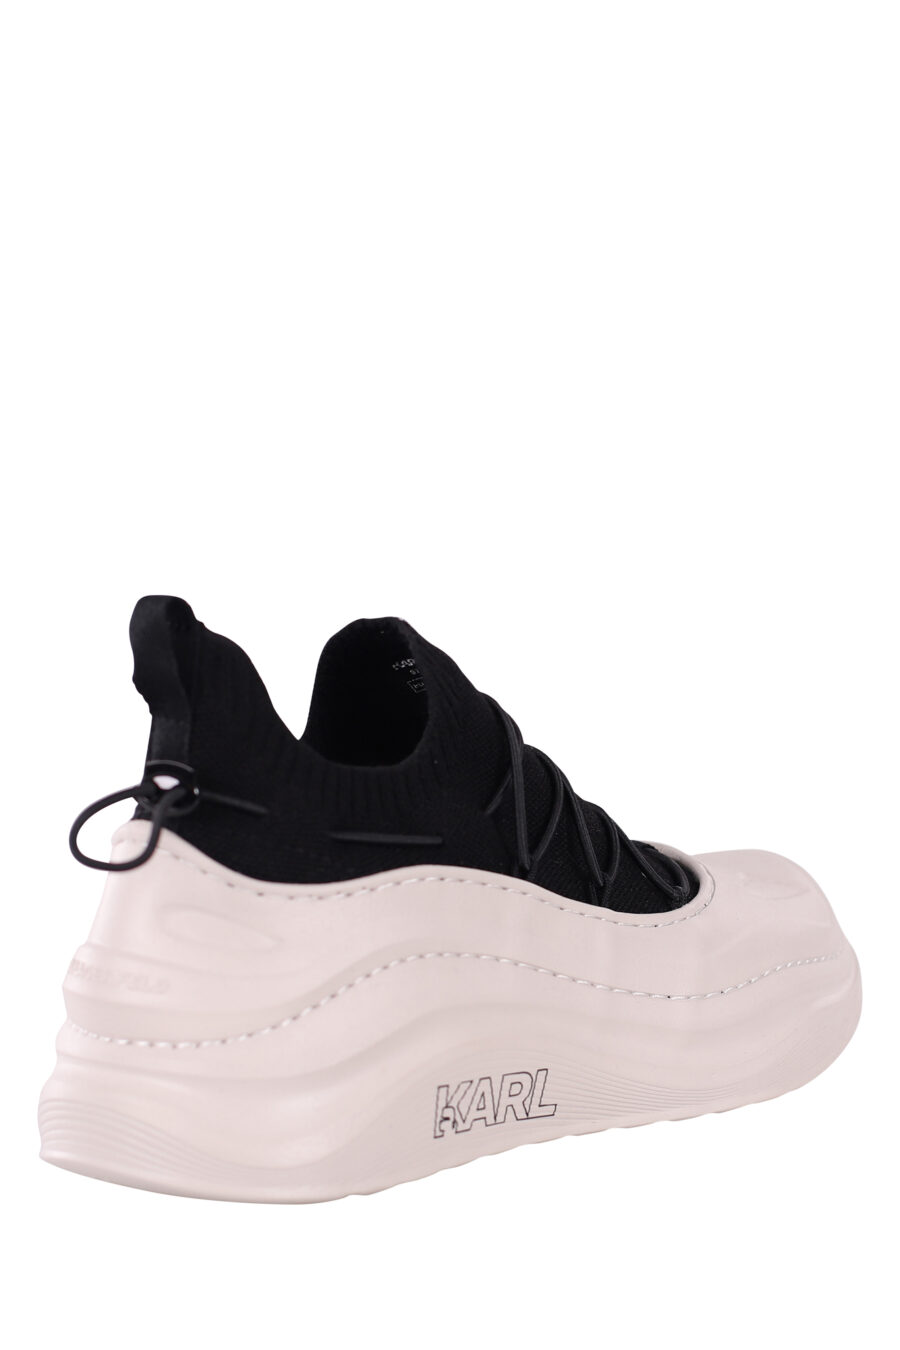 Zapatillas bicolor blancas y negras con suela blanca ondulada - IMG 5876